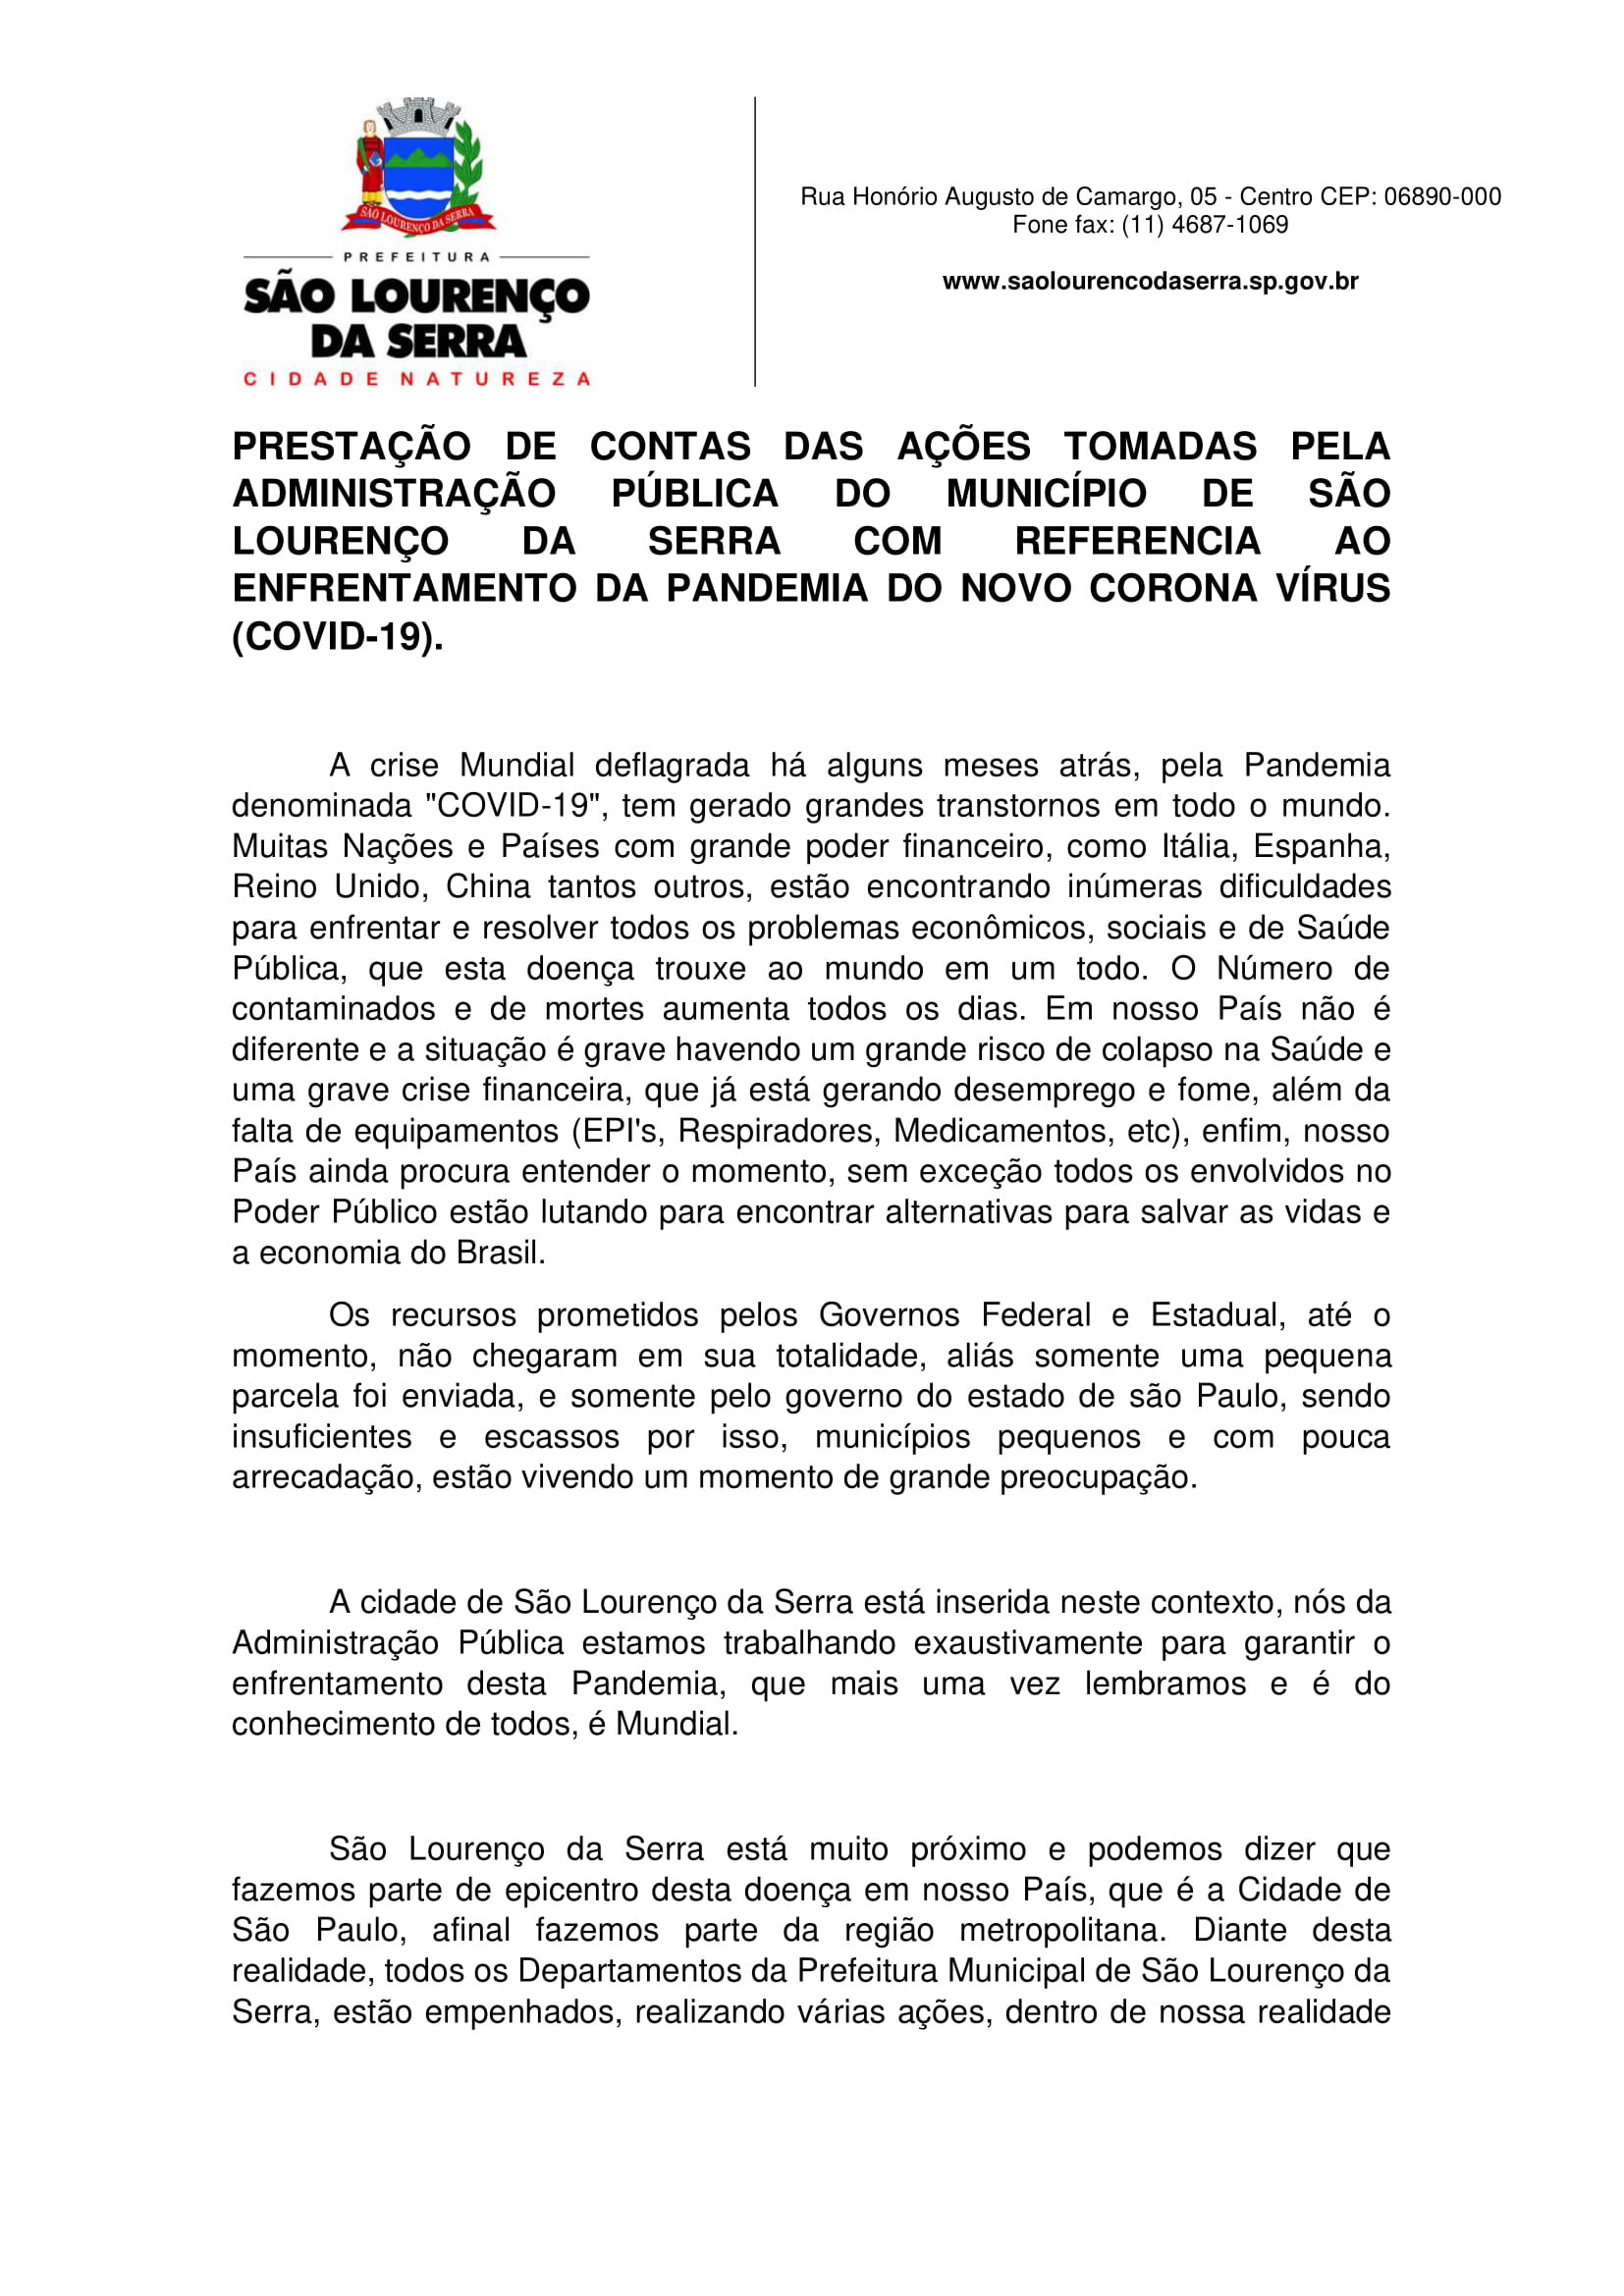 PRESTAÇÃO DE CONTAS PREFEITURA DE ITAPEVI 006 by Prefeitura de